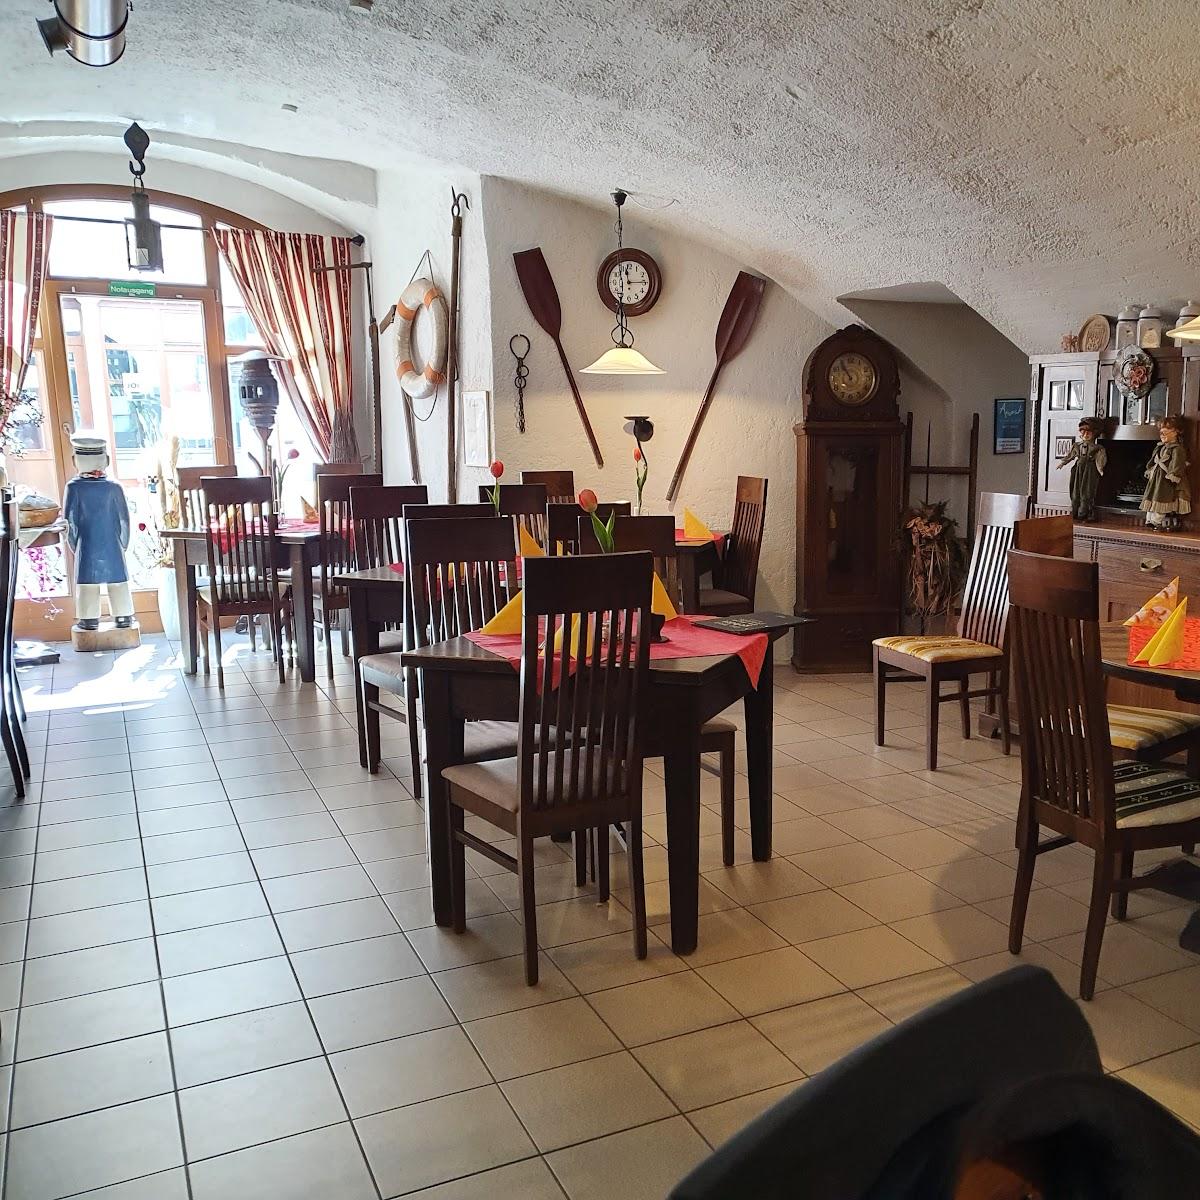 Restaurant "Gasthaus Zum Anker" in Pirna